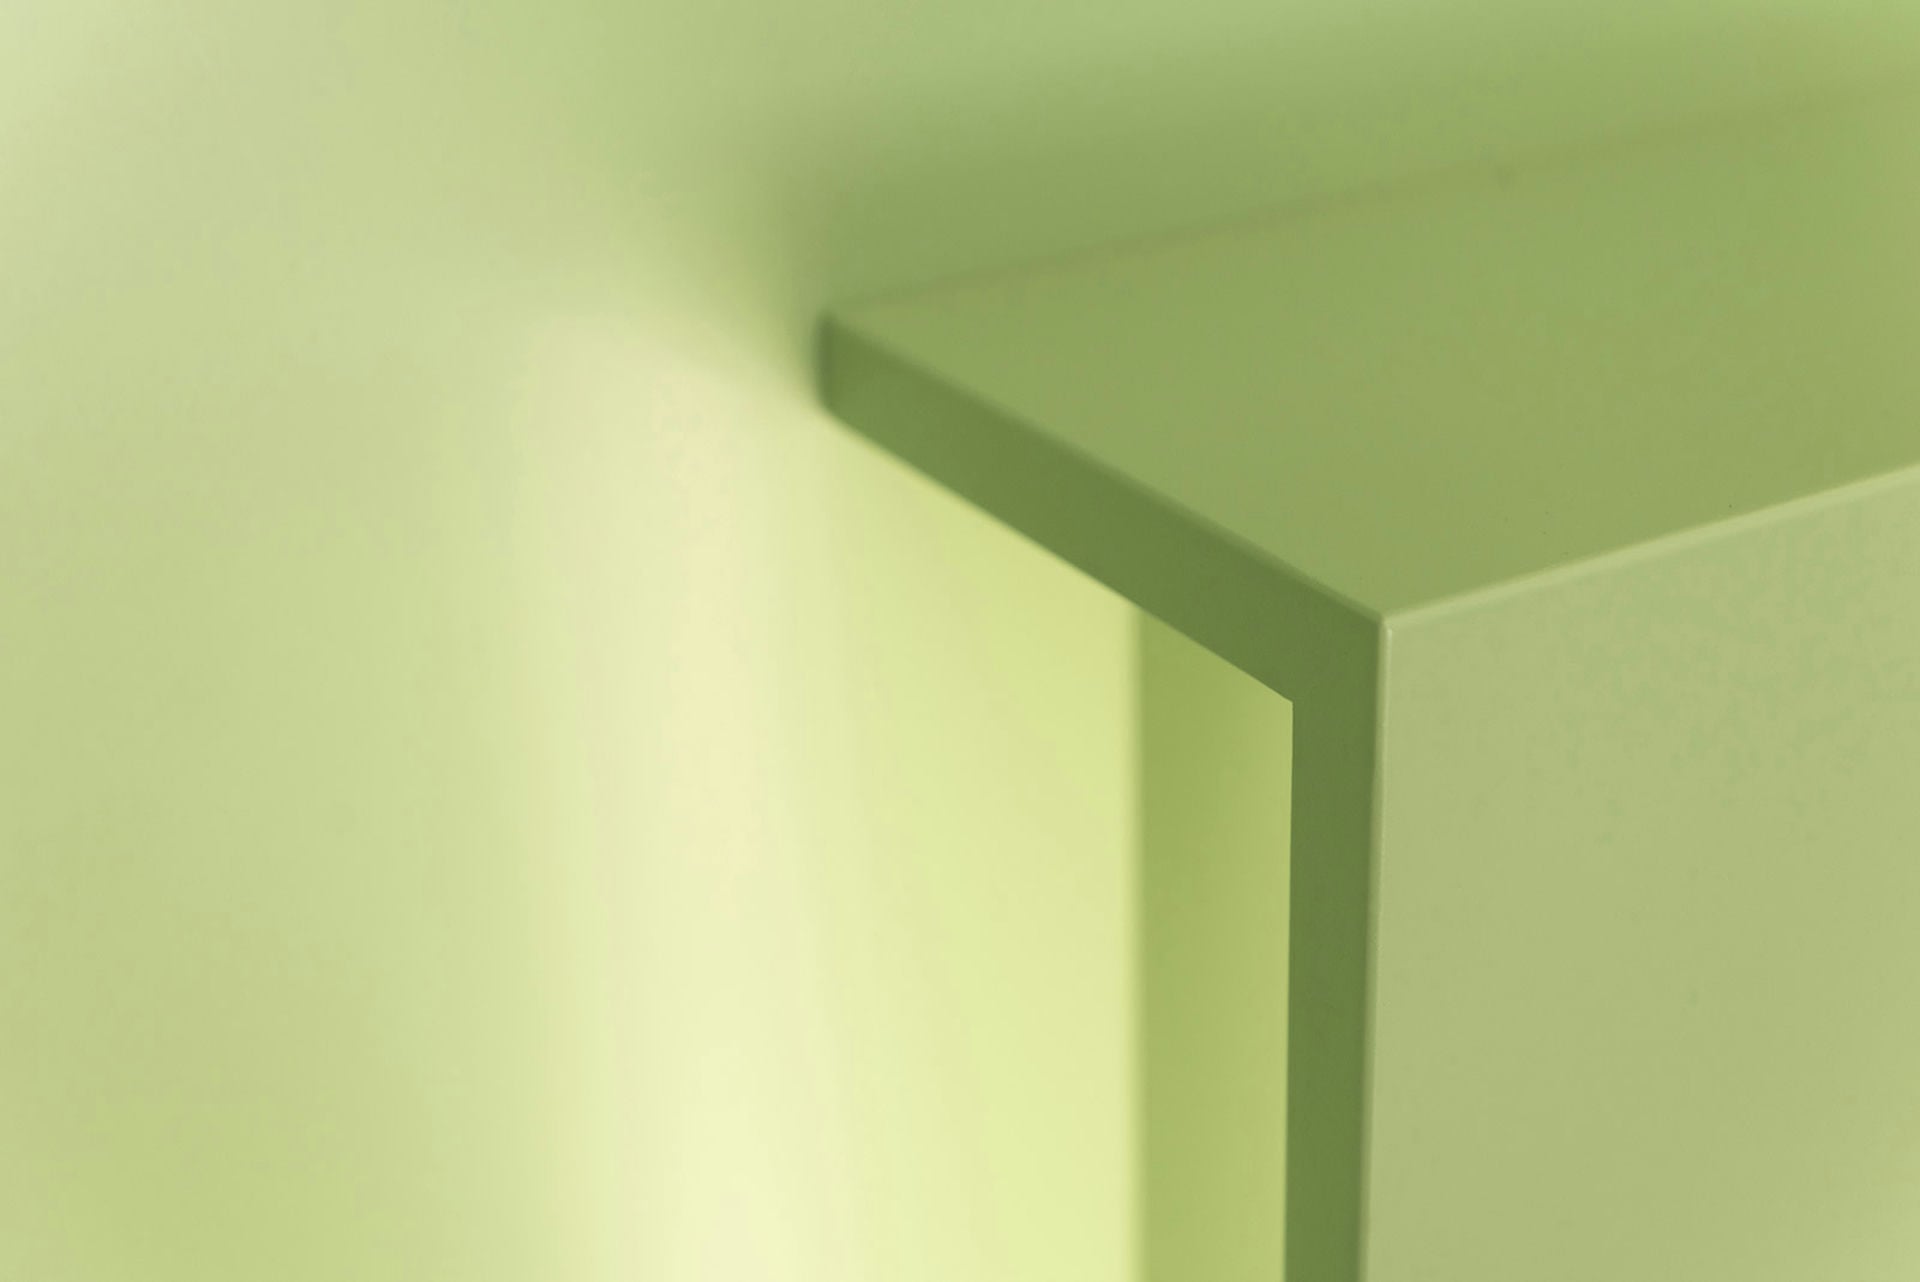 Ράφια και συρτάρια από ξύλο αμερικάνικης, σκούρης καρυδιάς σε συνδυασμό με το πράσινο χρώμα στην συρταριέρα του φαρμακείου